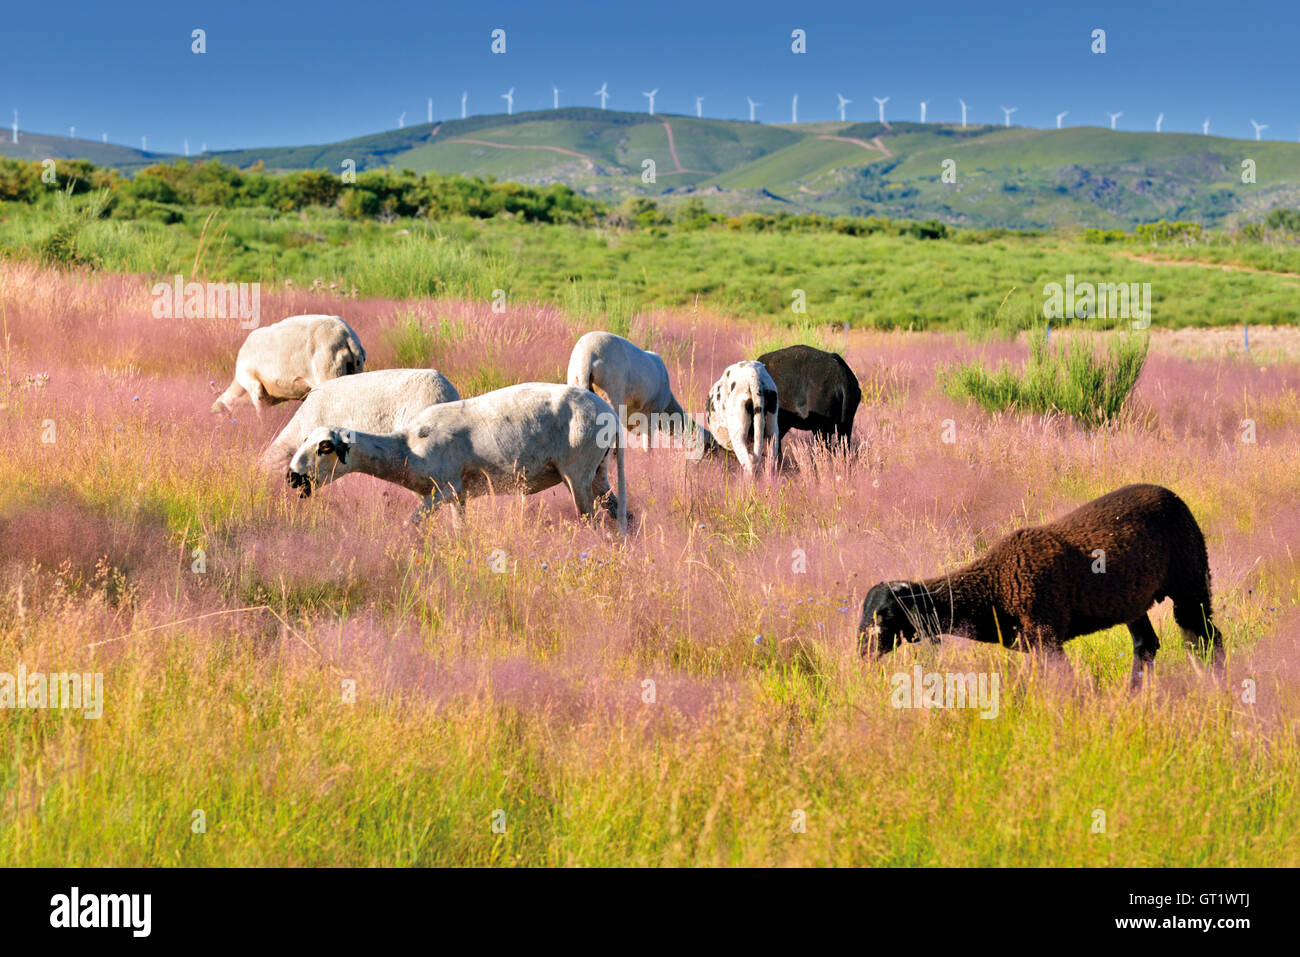 Portugal : un groupe de moutons blancs avec un mouton noir au milieu d'un terrain de montagne avec des fleurs roses on Green grass Banque D'Images